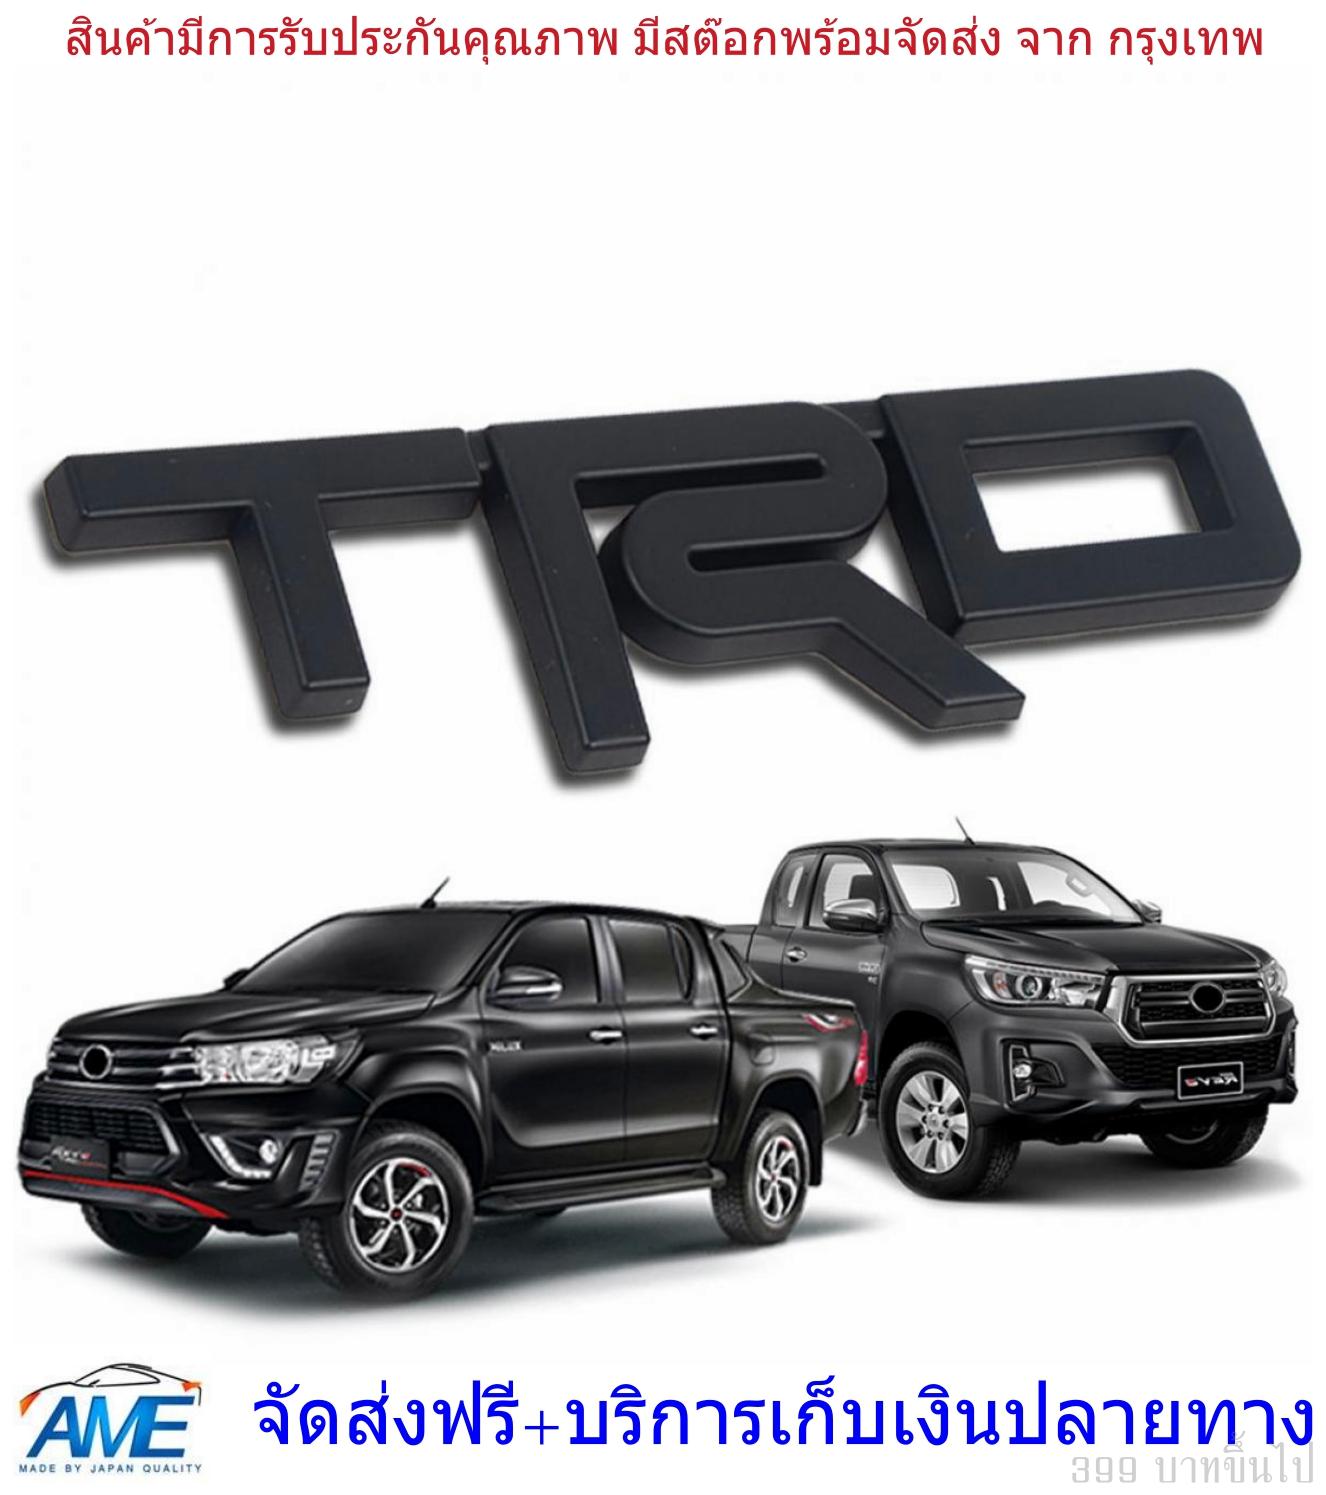 อักษร logo โลโก้ สีดำ โตโยต้า รีโว่ รีโว้ วีโก้ vigo ติดกระจังหน้า ขนาด 13.5*3.5*0.5 พร้อม เทป 3M ลโก้ติดรถยนต์ 3D ลายTRD / สติ๊กเกอร์ติดรถยนต์ เพลทแต่งรถ TRD Logo Sticker